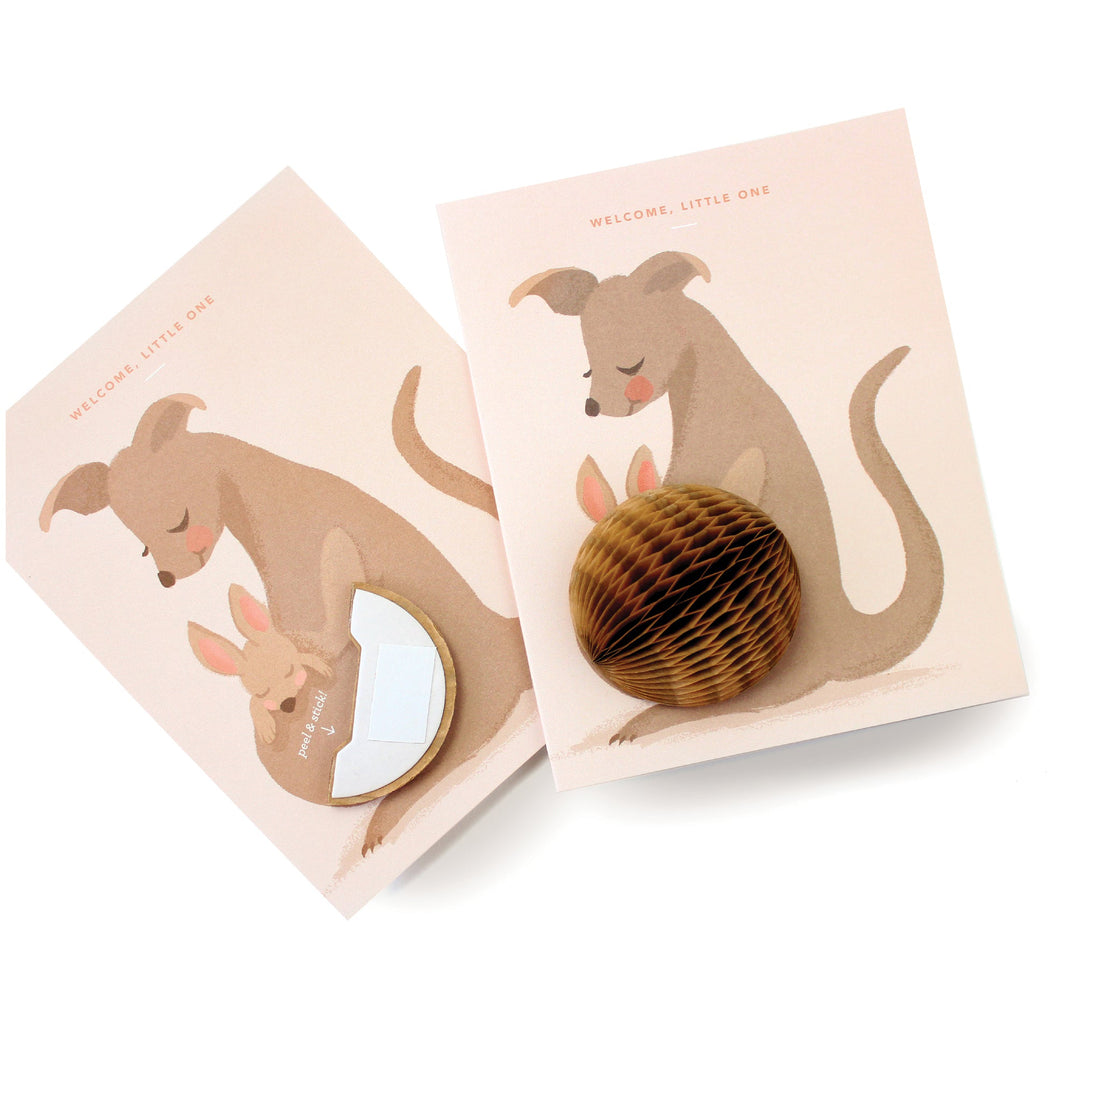 inklings-paperie-kangaroo-baby-pop-up-card-single-card-inkl-gcp064